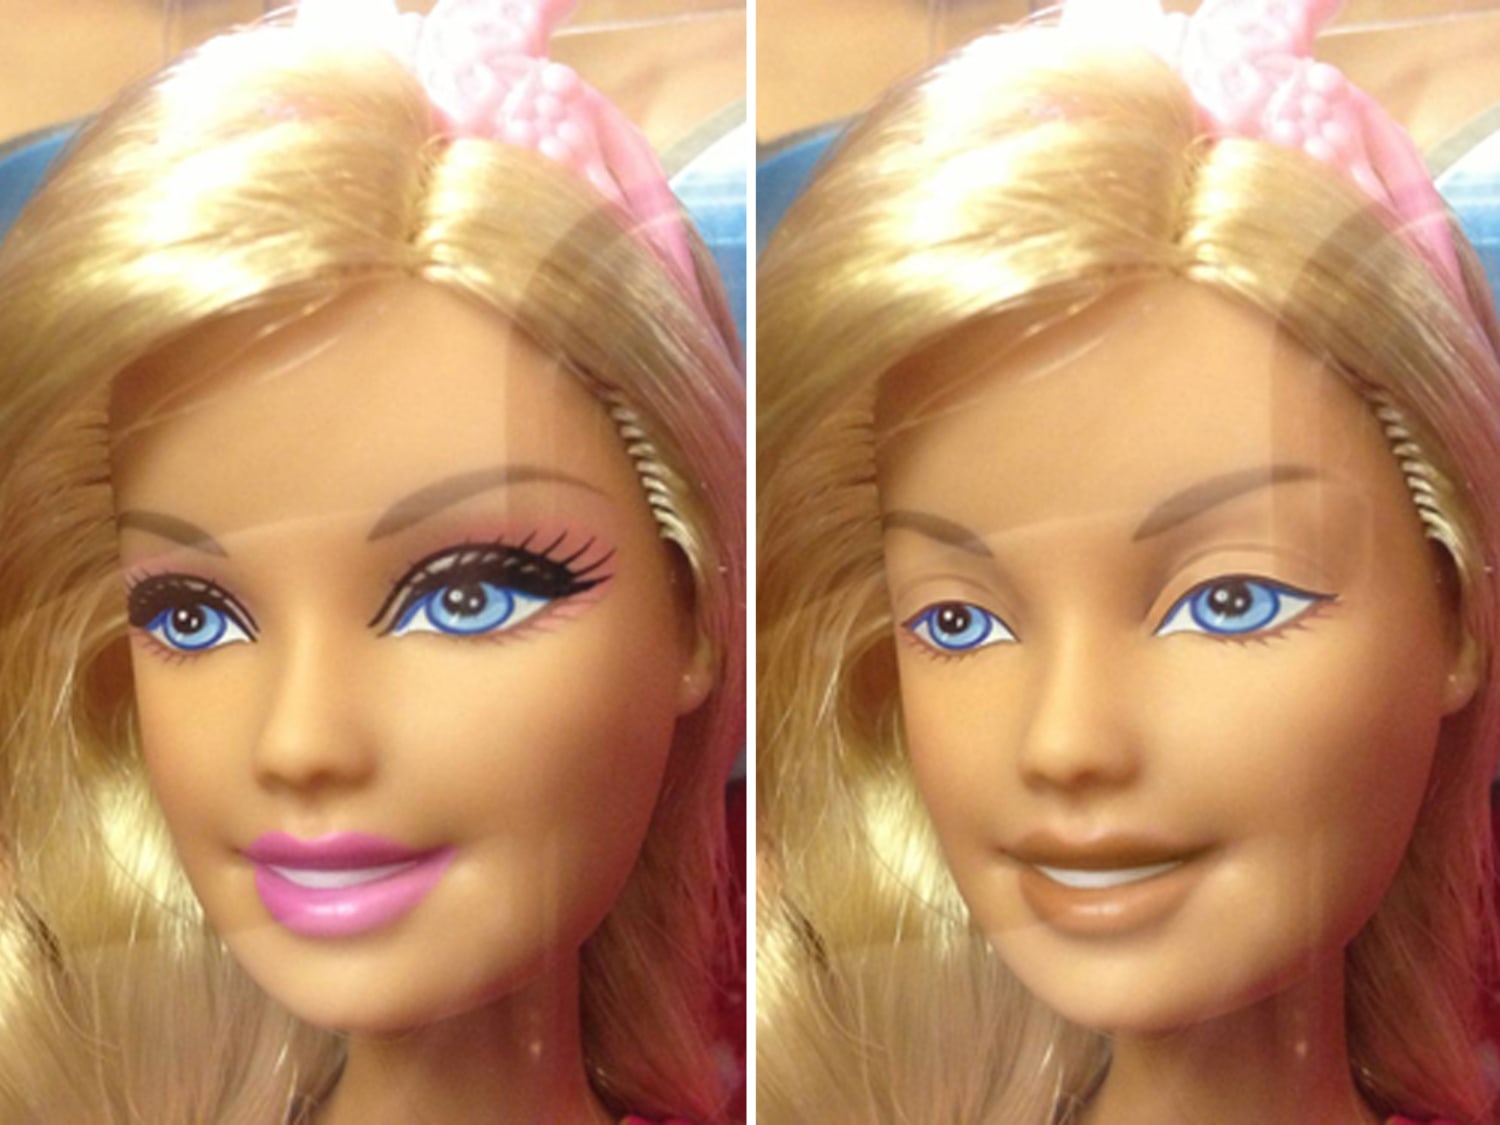 Bestemt gjorde det Forblive Dolls without makeup: An artist's vision goes viral